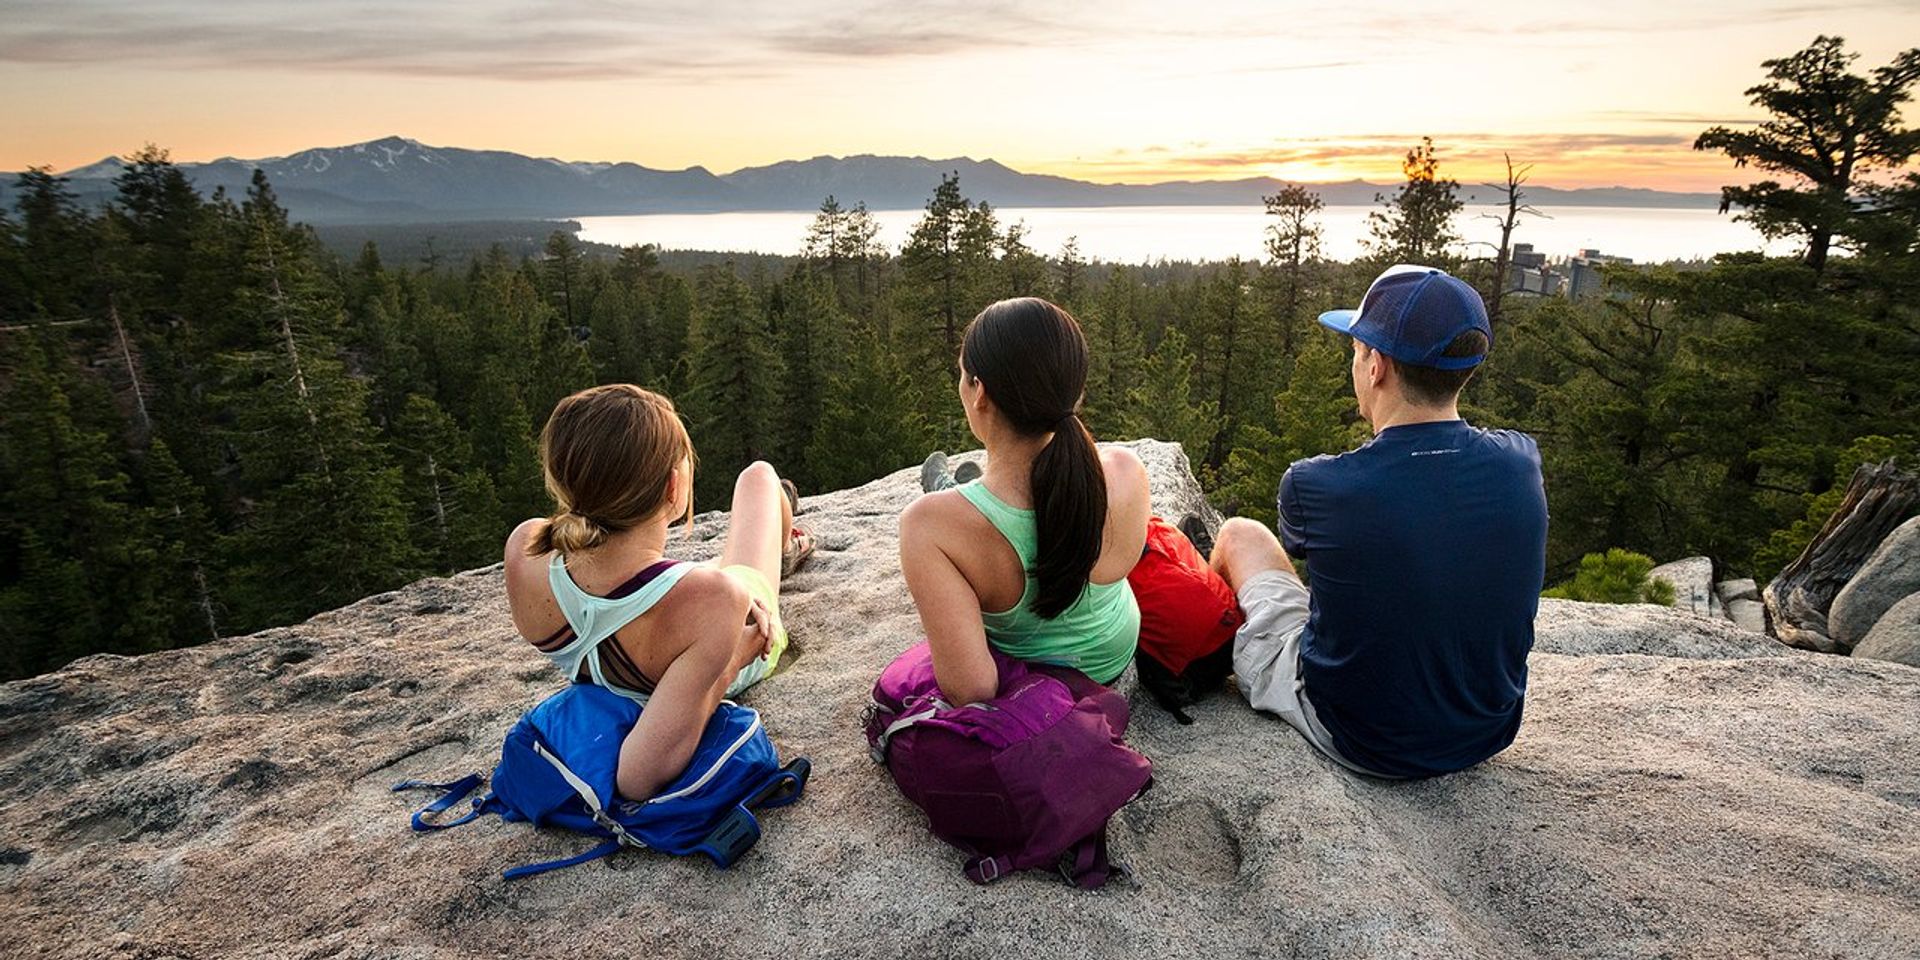 Le lac Tahoe : Votre guide ultime pour laventure et la détente.